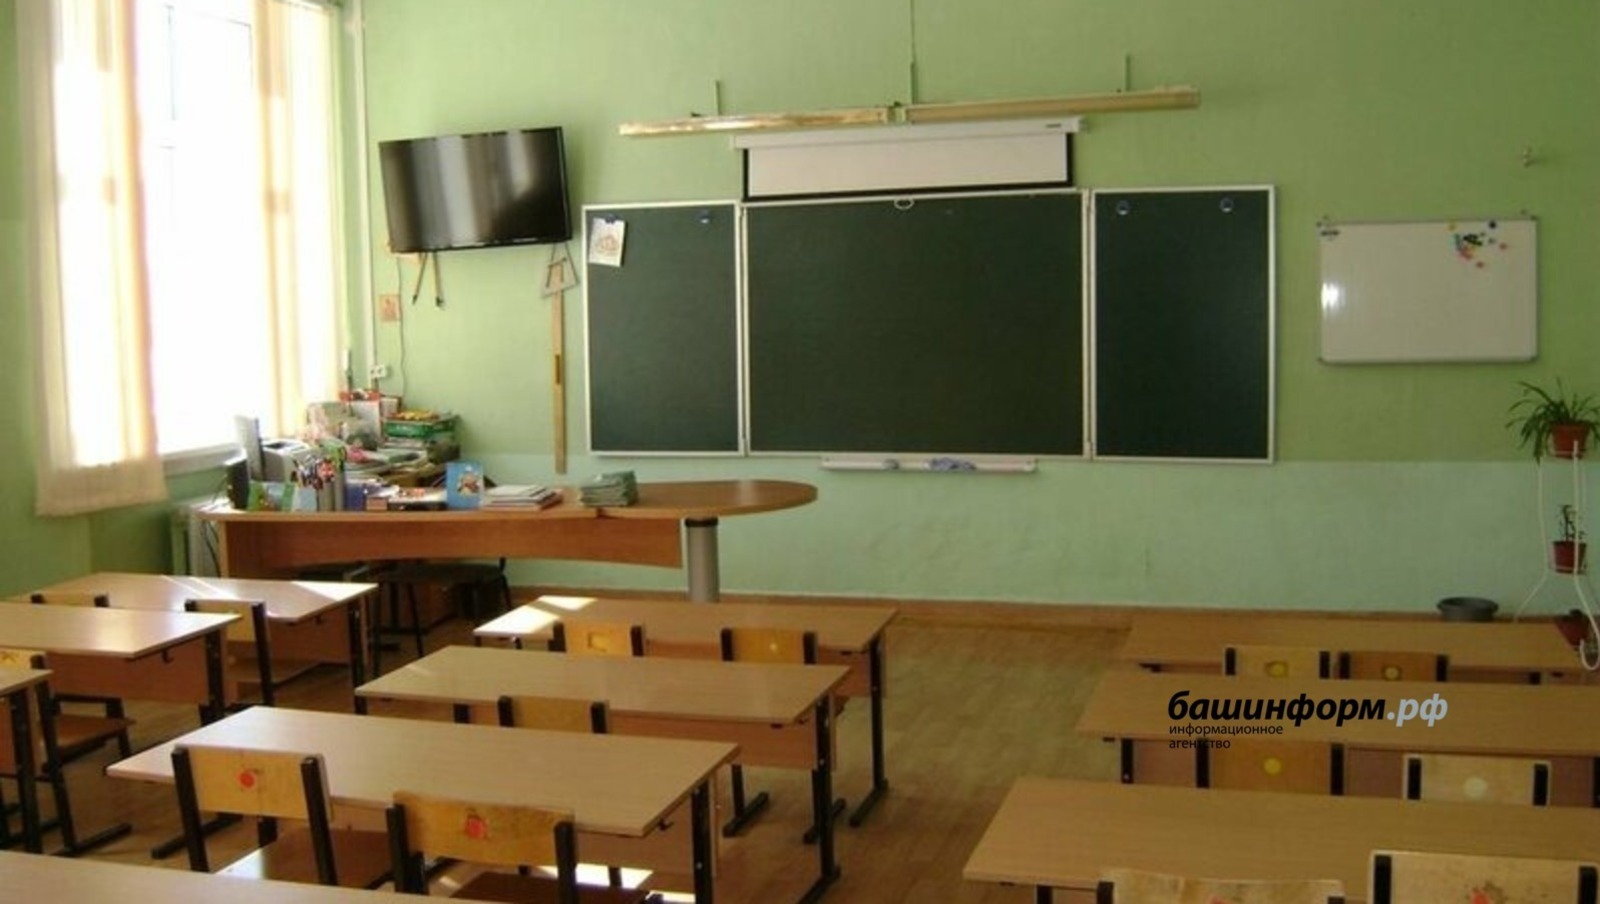 Все сельские школы Башкирии через два года оснастят оборудованием по естественным наукам